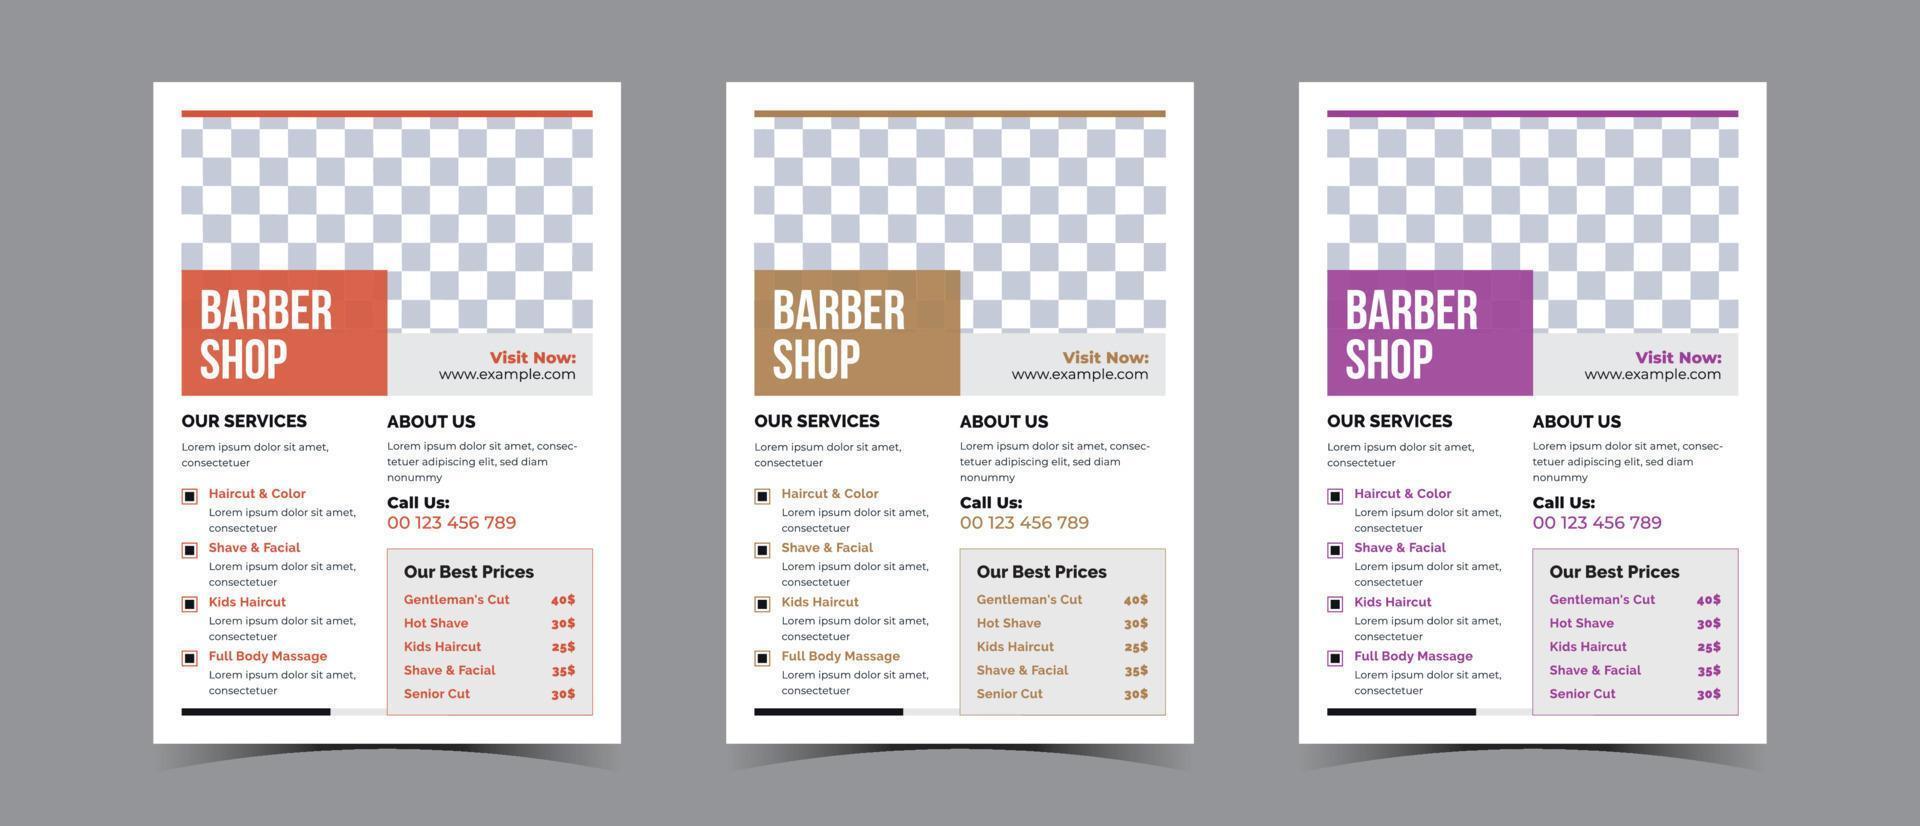 aviatore design per barbiere negozio attività commerciale e terme attività commerciale vettore